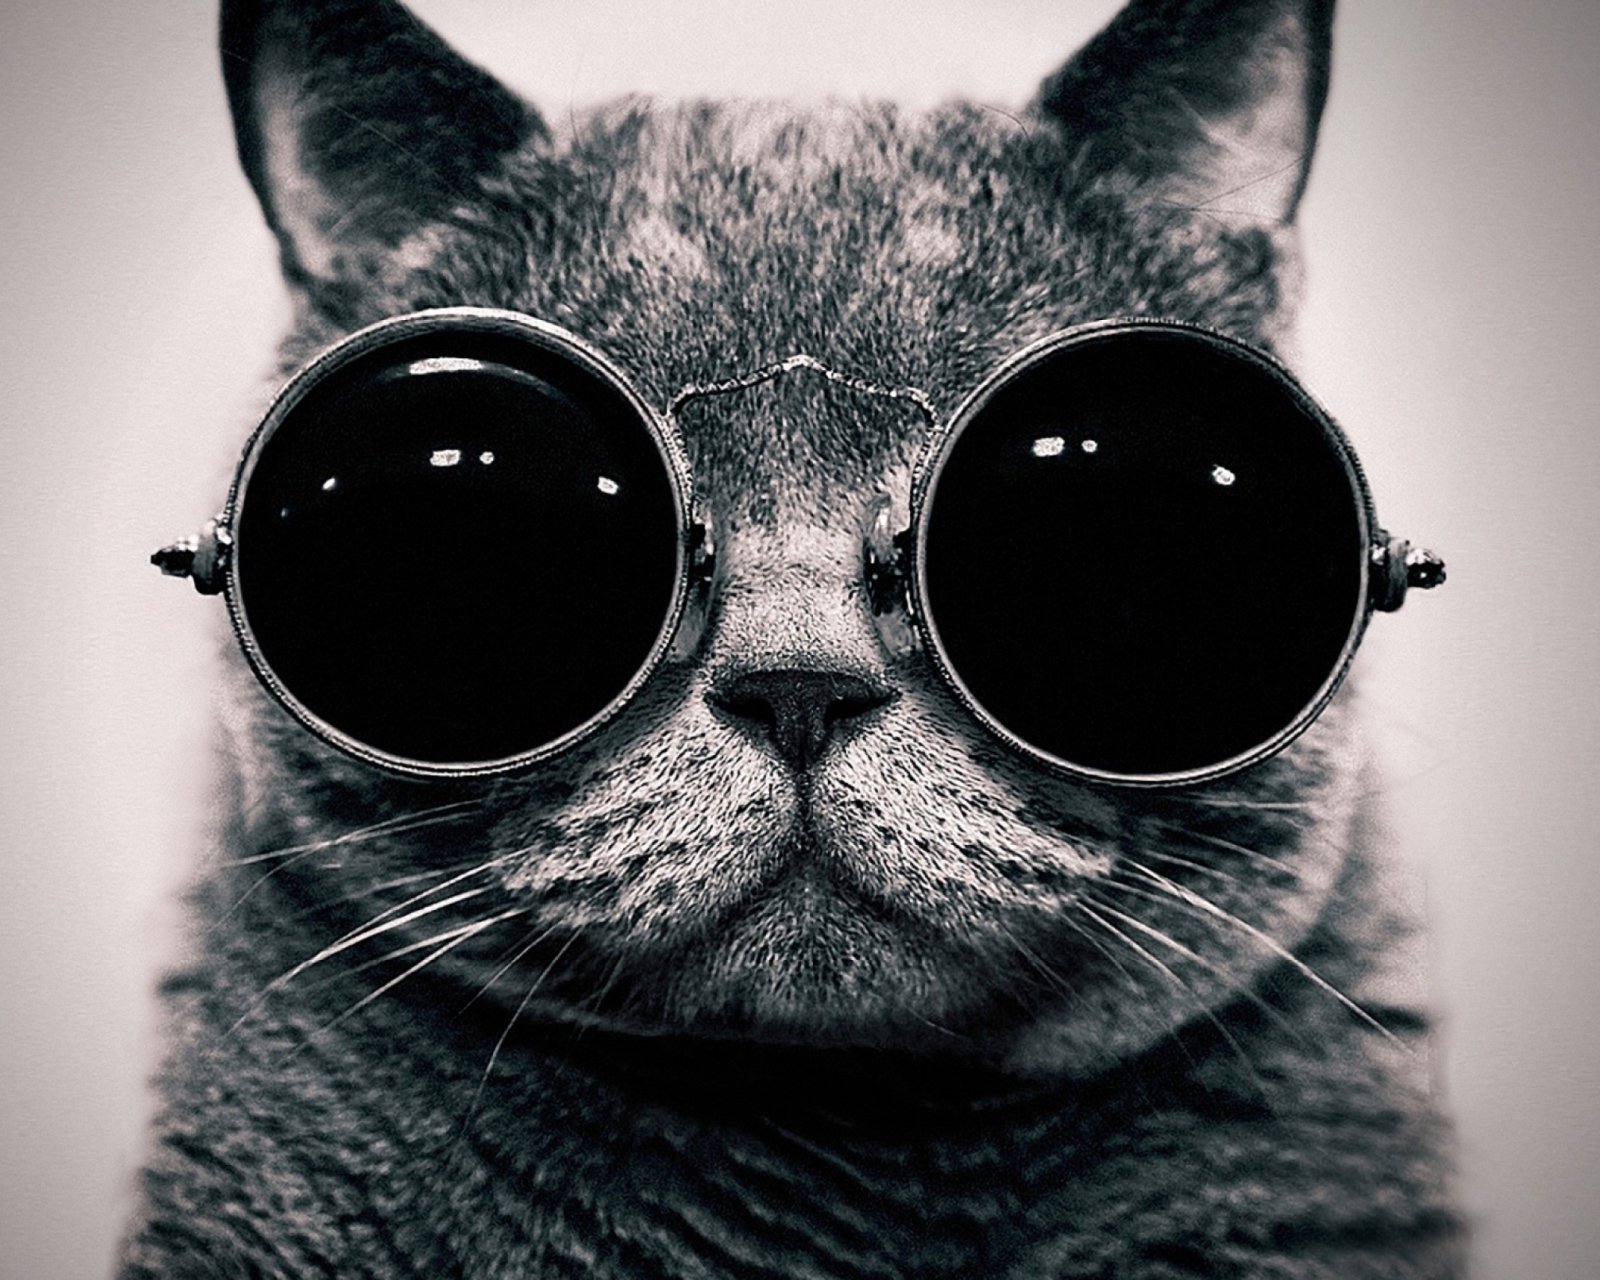 Обои Cat With Glasses 1600x1280